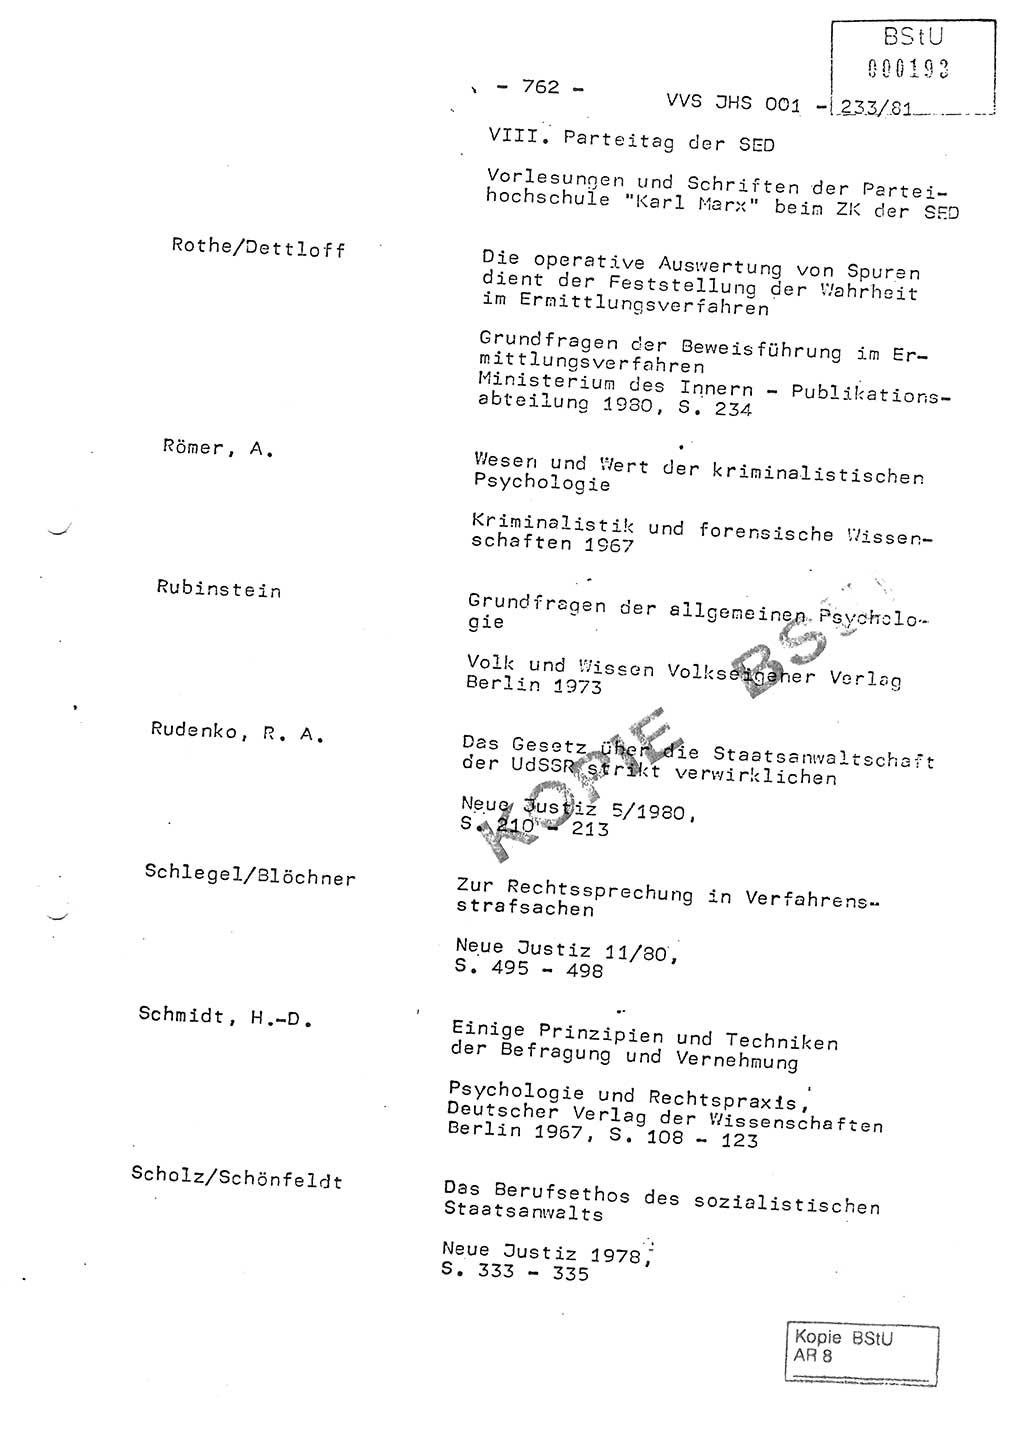 Dissertation Oberstleutnant Horst Zank (JHS), Oberstleutnant Dr. Karl-Heinz Knoblauch (JHS), Oberstleutnant Gustav-Adolf Kowalewski (HA Ⅸ), Oberstleutnant Wolfgang Plötner (HA Ⅸ), Ministerium für Staatssicherheit (MfS) [Deutsche Demokratische Republik (DDR)], Juristische Hochschule (JHS), Vertrauliche Verschlußsache (VVS) o001-233/81, Potsdam 1981, Blatt 762 (Diss. MfS DDR JHS VVS o001-233/81 1981, Bl. 762)